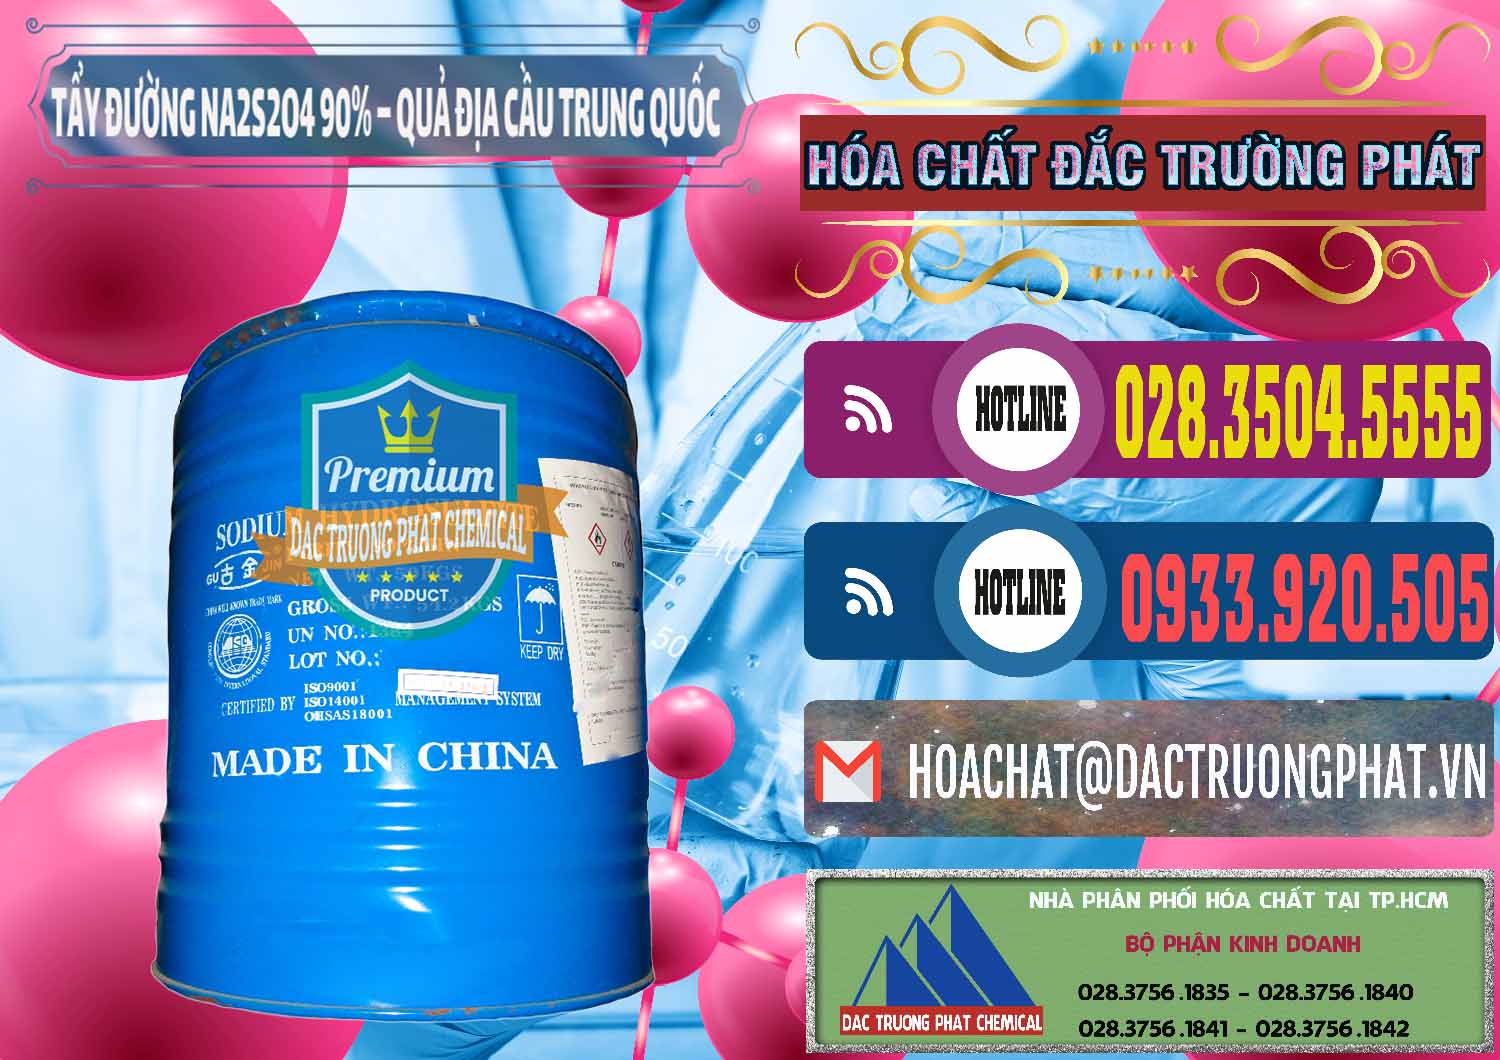 Nơi chuyên bán và cung ứng Tẩy Đường - NA2S2O4 Logo Quả Địa Cầu Trung Quốc China - 0159 - Cty chuyên cung ứng & phân phối hóa chất tại TP.HCM - muabanhoachat.com.vn